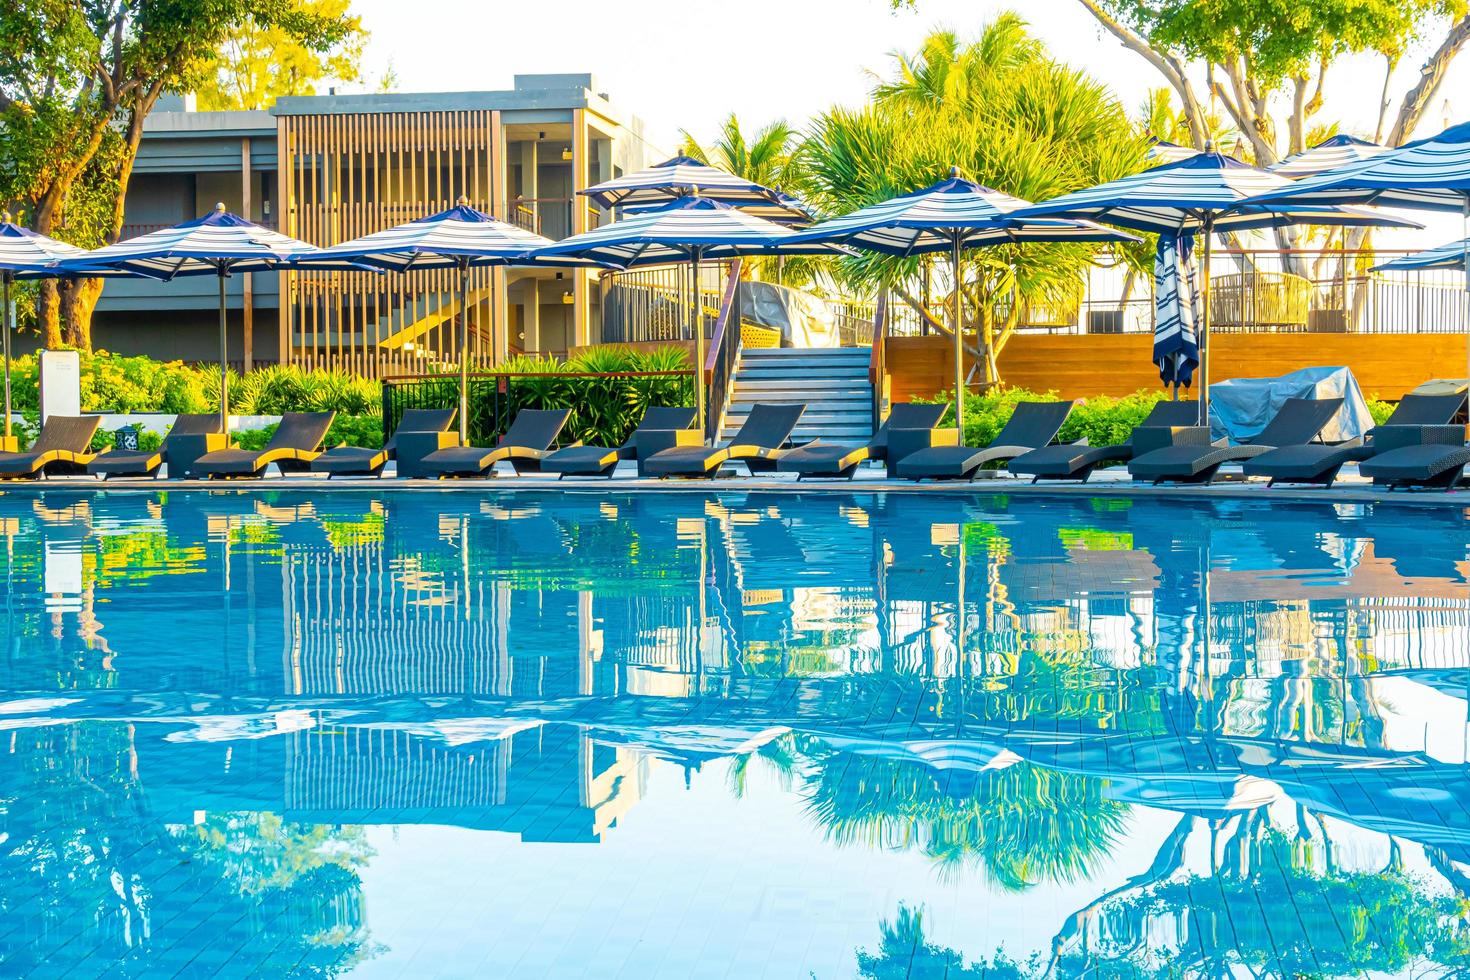 guarda-sol e cama ao redor da piscina externa em hotel resort para viagens de férias foto